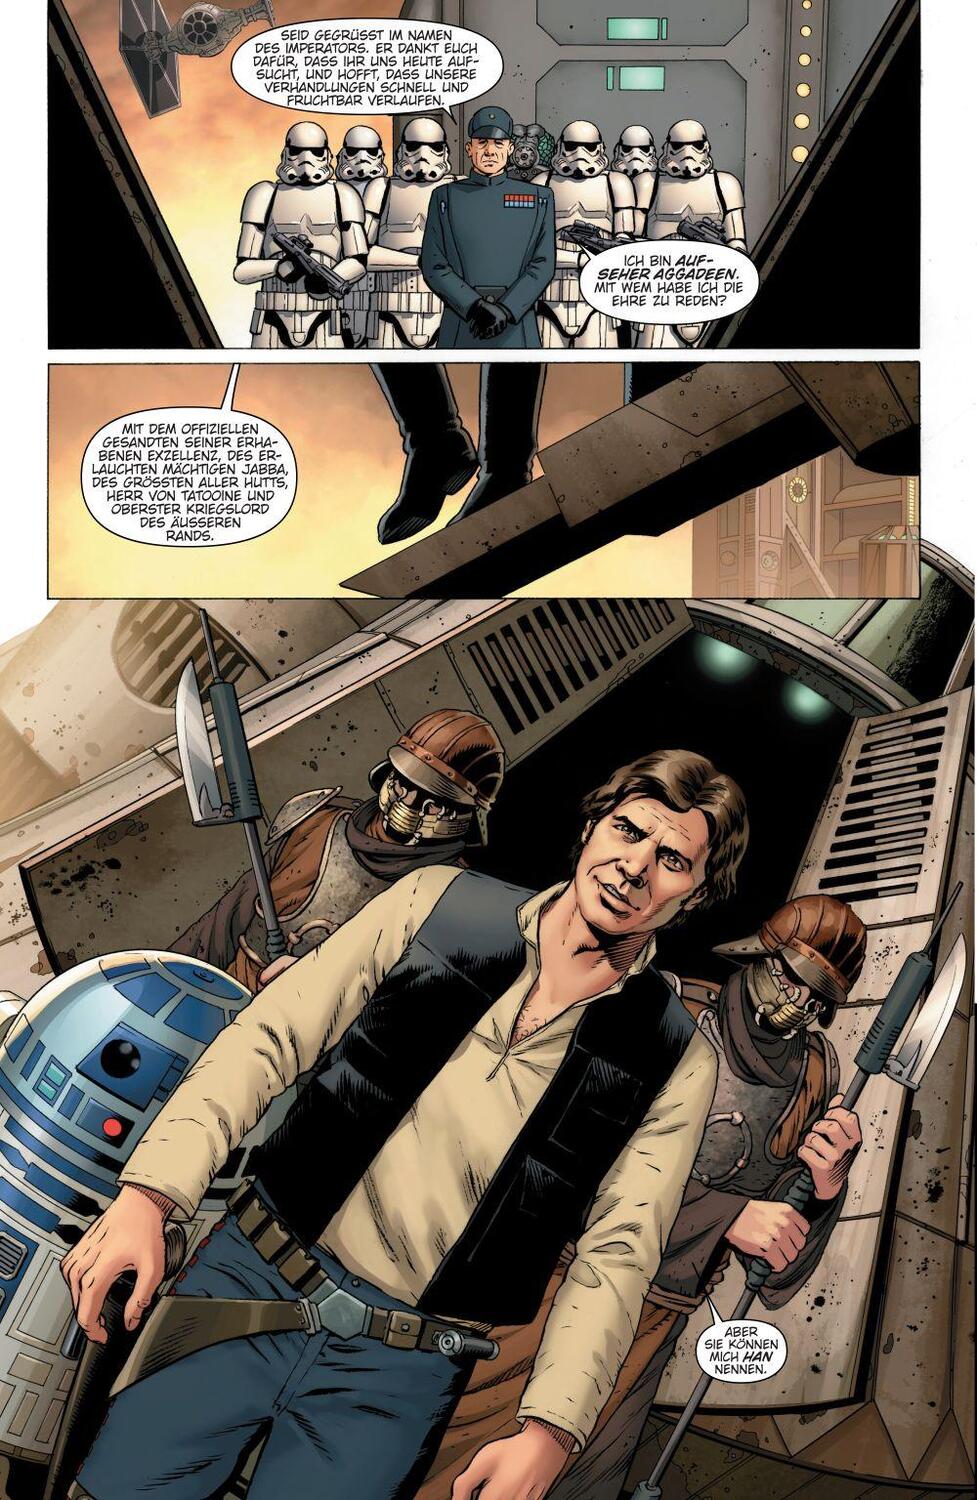 Bild: 9783741623158 | Star Wars Marvel Comics-Kollektion | Bd. 1: Skywalker schlägt zu!